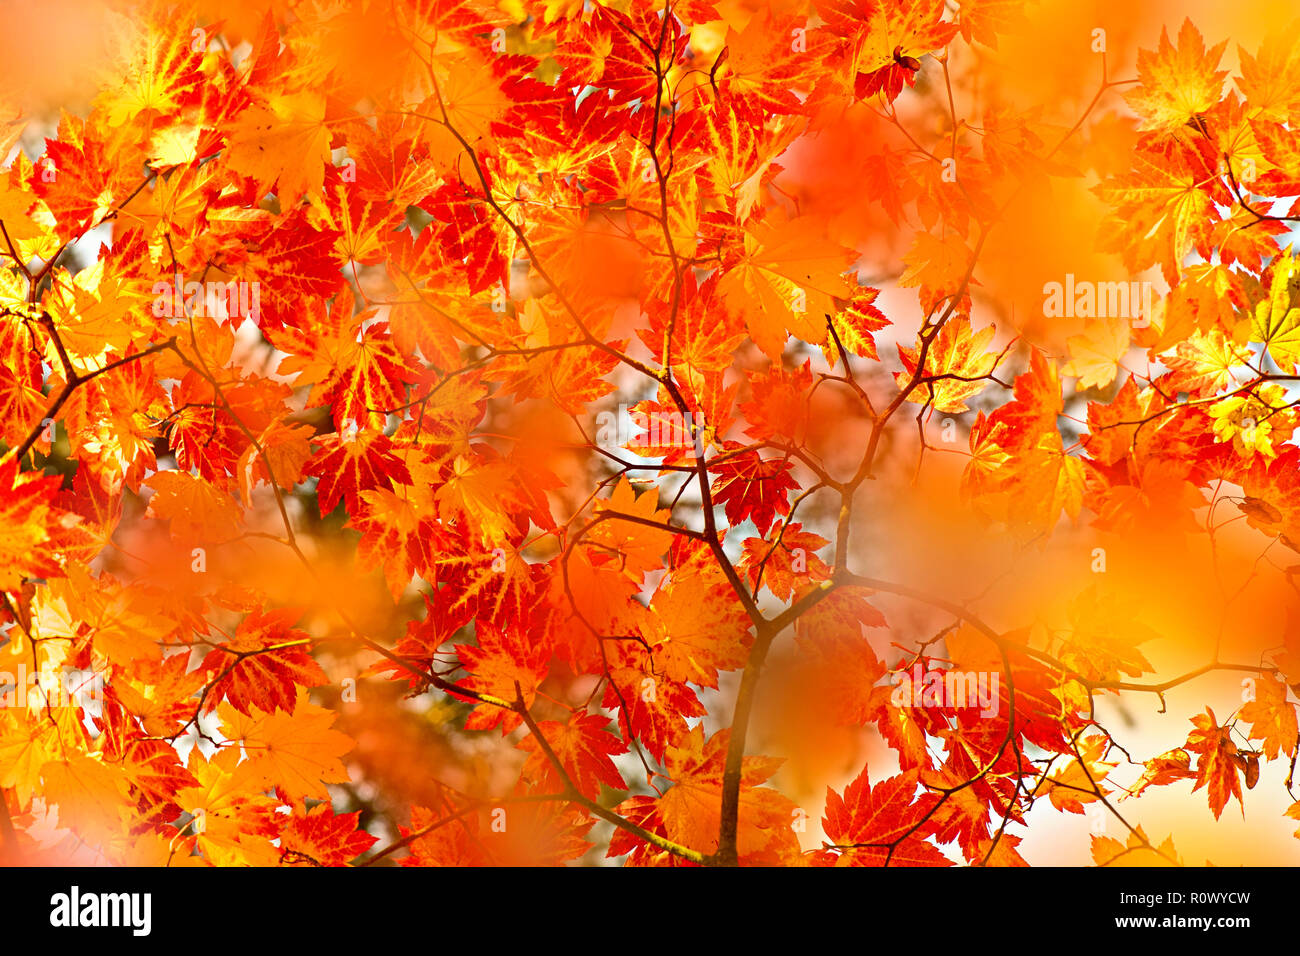 Close-up di immagine vibrante autunno foglie colorate del giapponese acero - Acer Palmatum Foto Stock